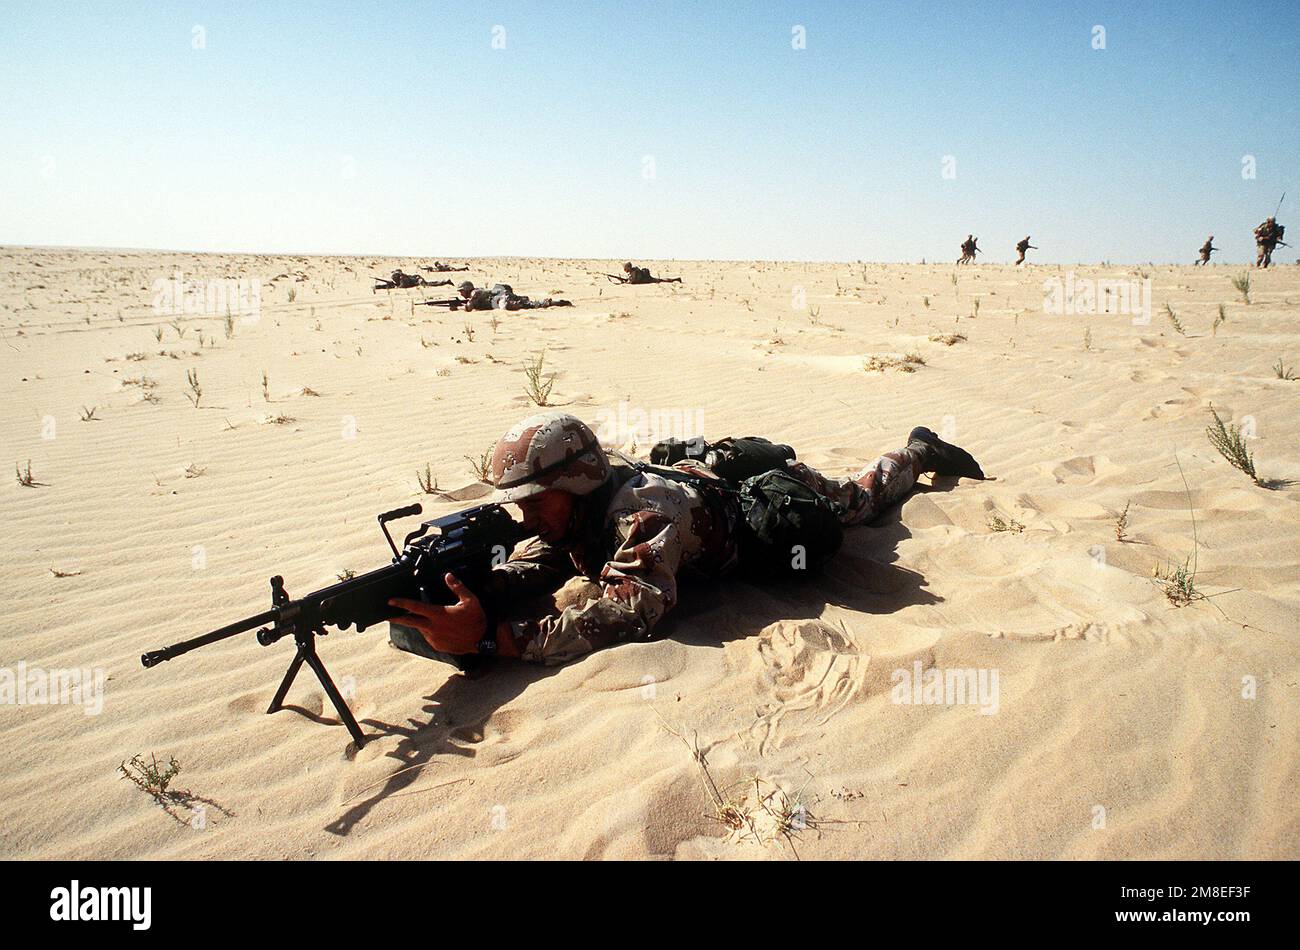 Les membres de 1st BN., 505th parachute Infantry Regt., 82nd Airborne Dive., effectuent des exercices de réaction sur un champ d'entraînement pendant l'opération Desert Shield. Le soldat au premier plan est armé d'une arme automatique M-249. Objet opération/série : BOUCLIER DU DÉSERT pays : Arabie saoudite (SAU) Banque D'Images